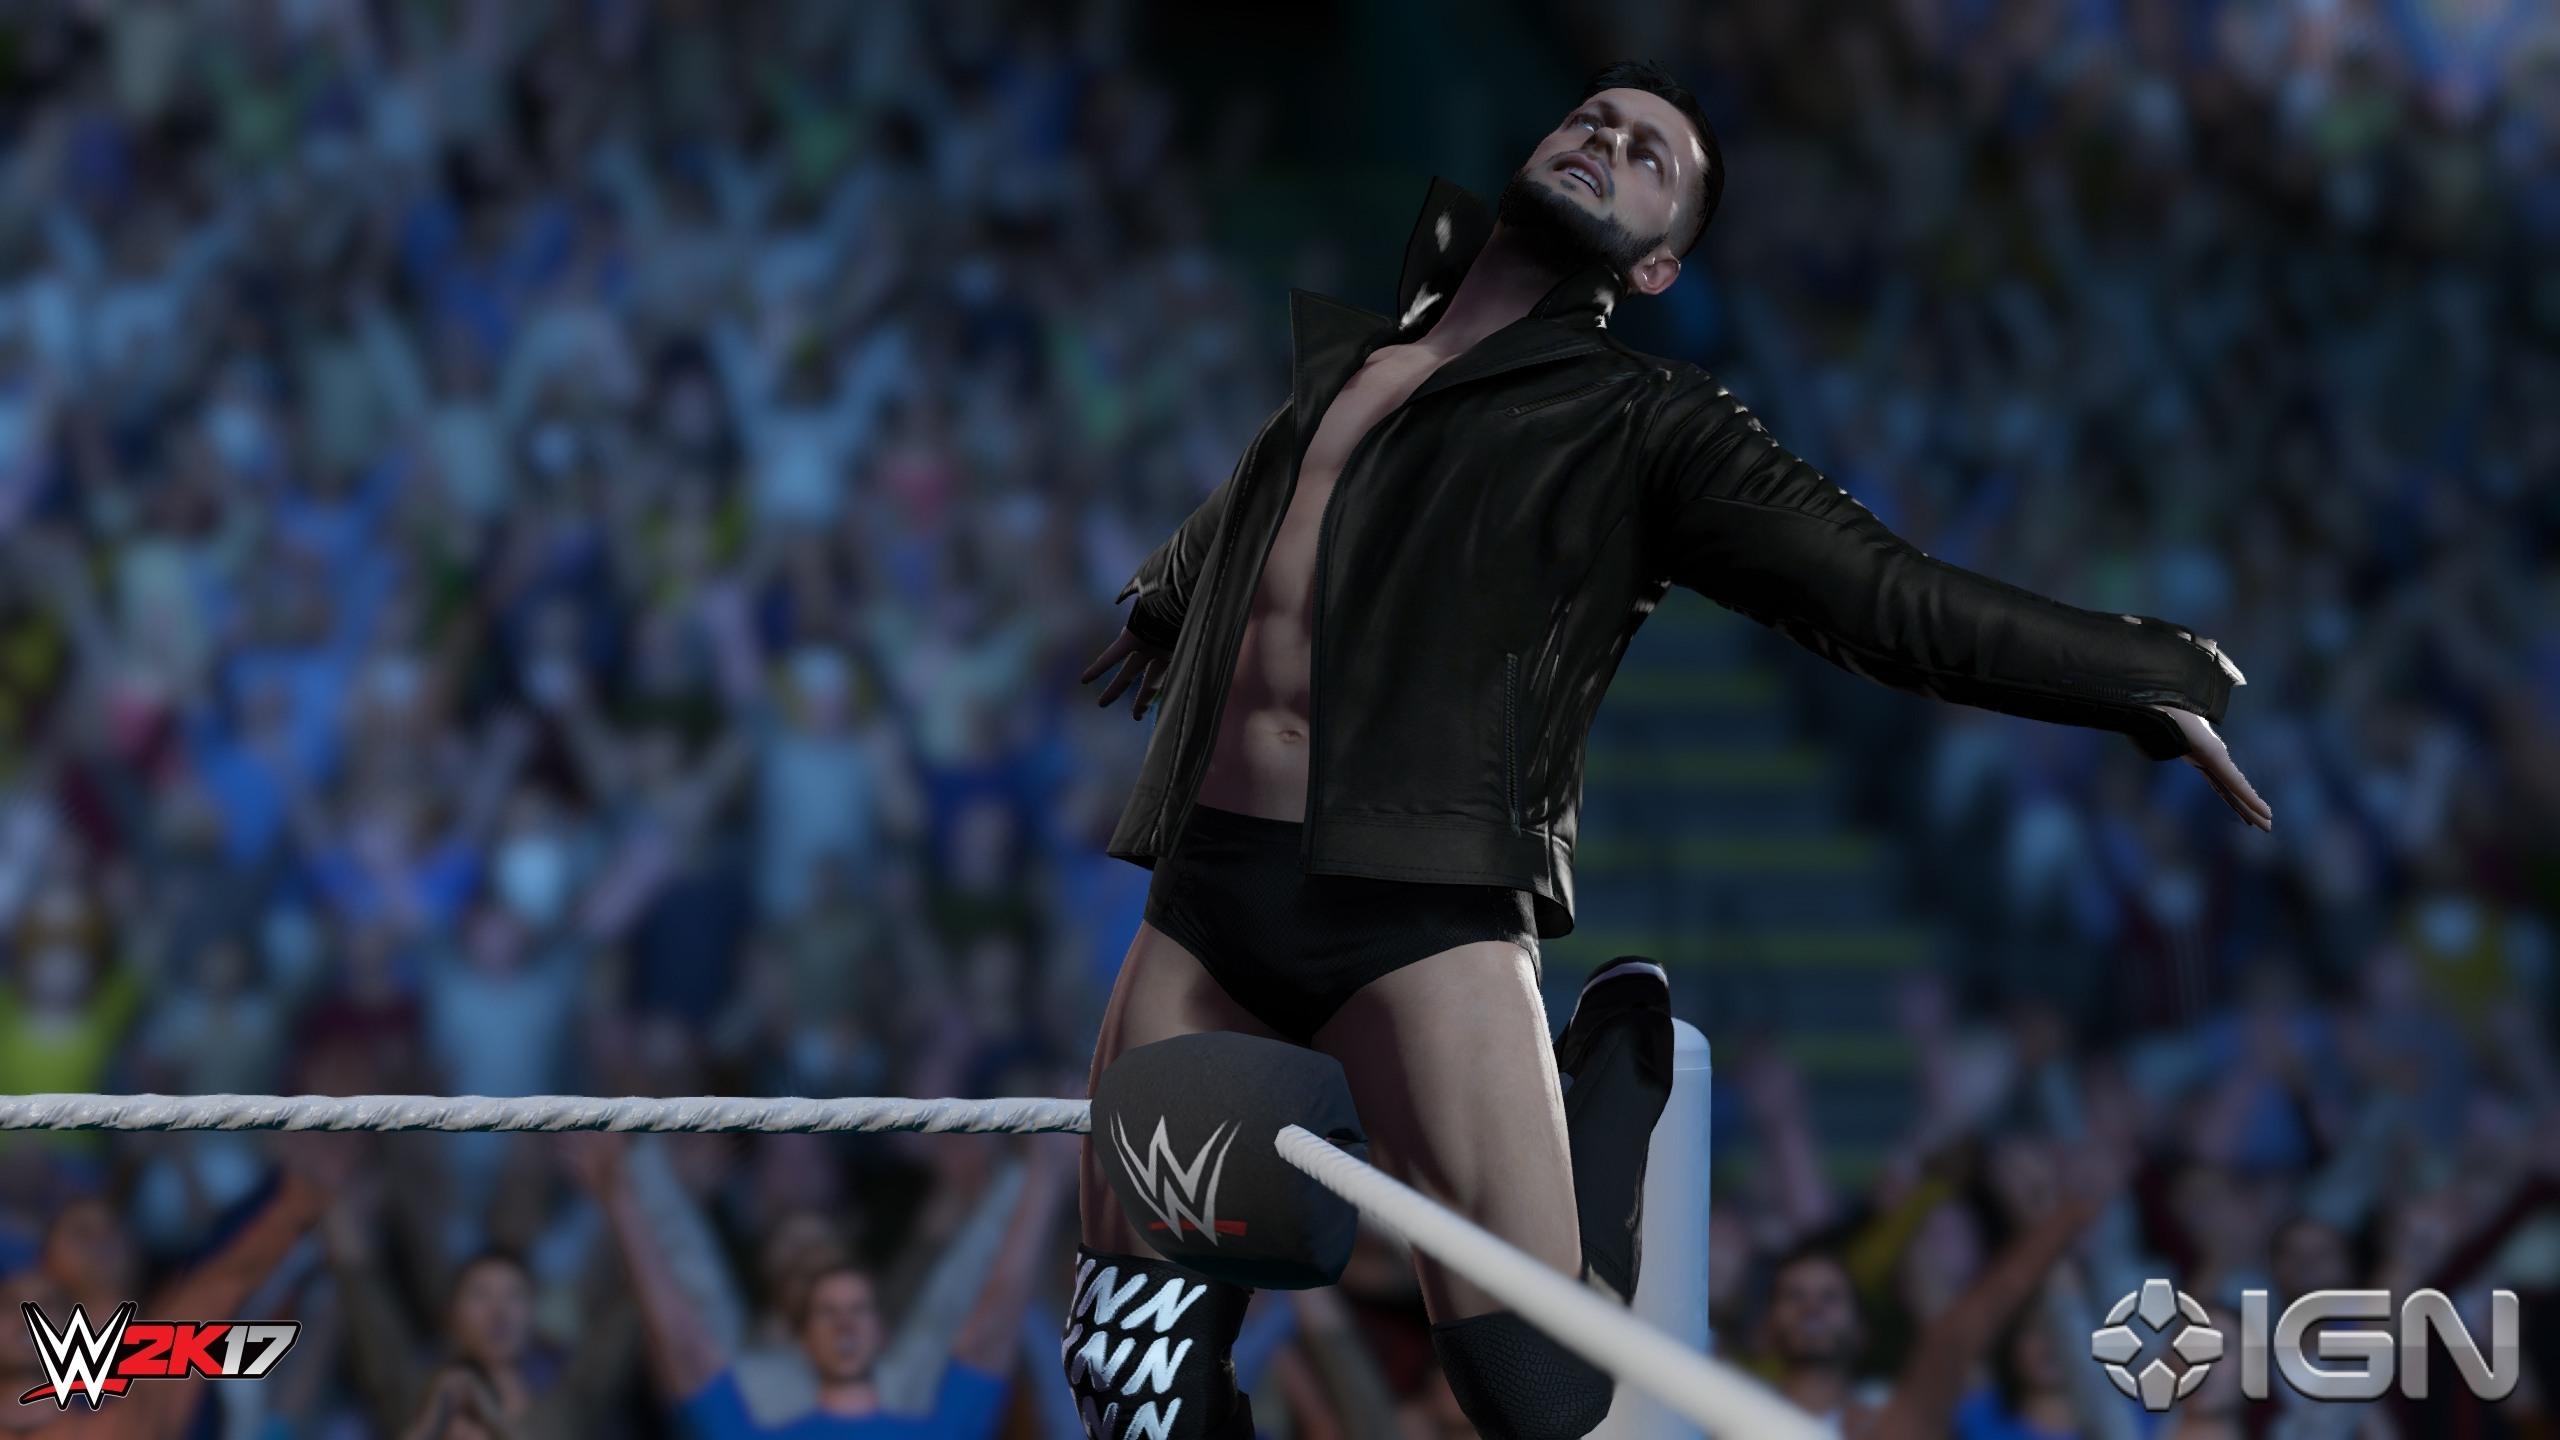 WWE 2K17: 7 NEW Screenshots featuring Nakamura, Brock Lesnar, Finn